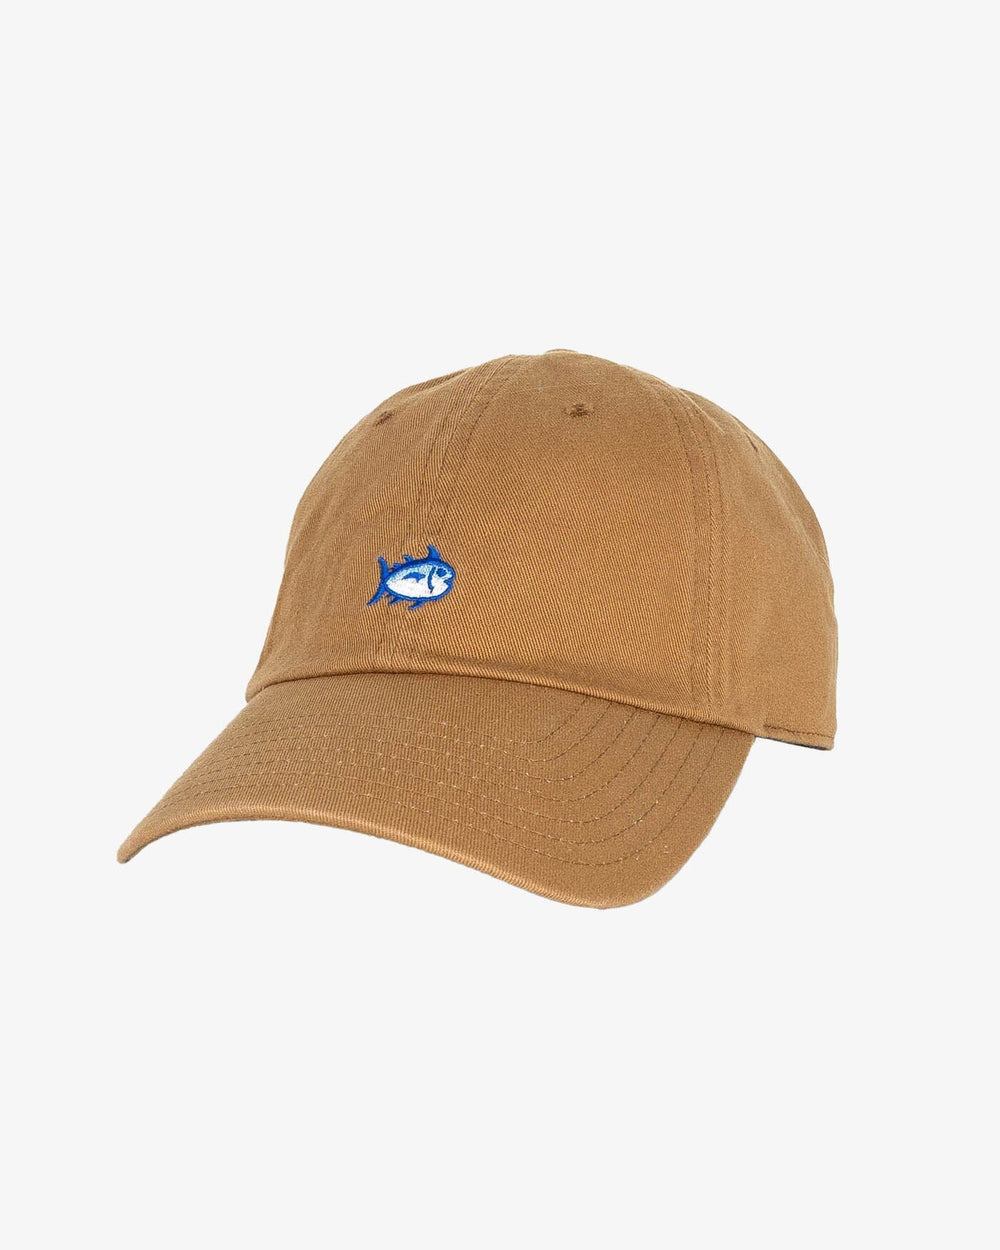 Mens Skipjack Leather Strap Hat | Southern Tide